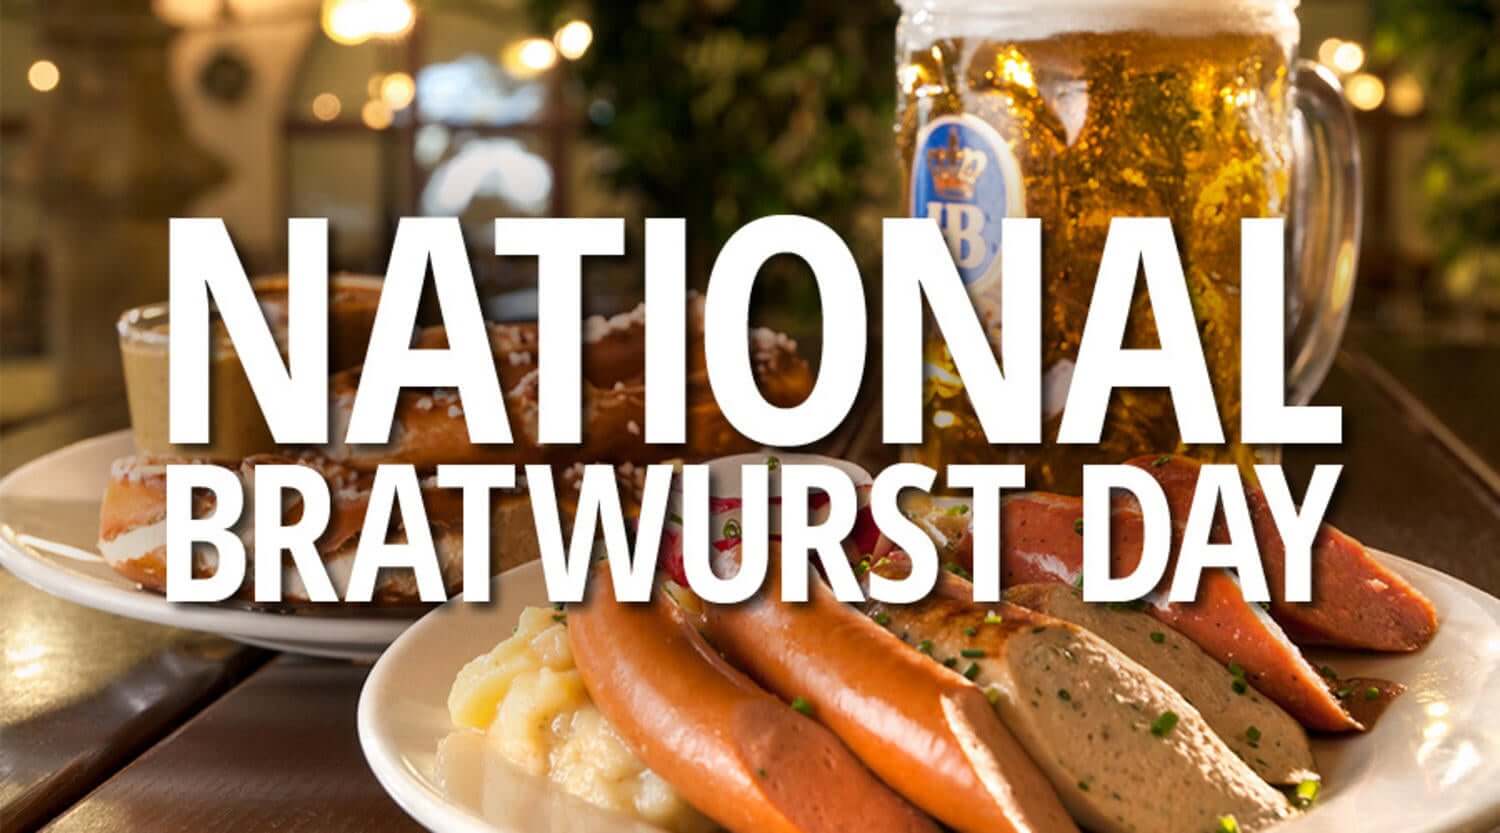 National Bratwurst Day